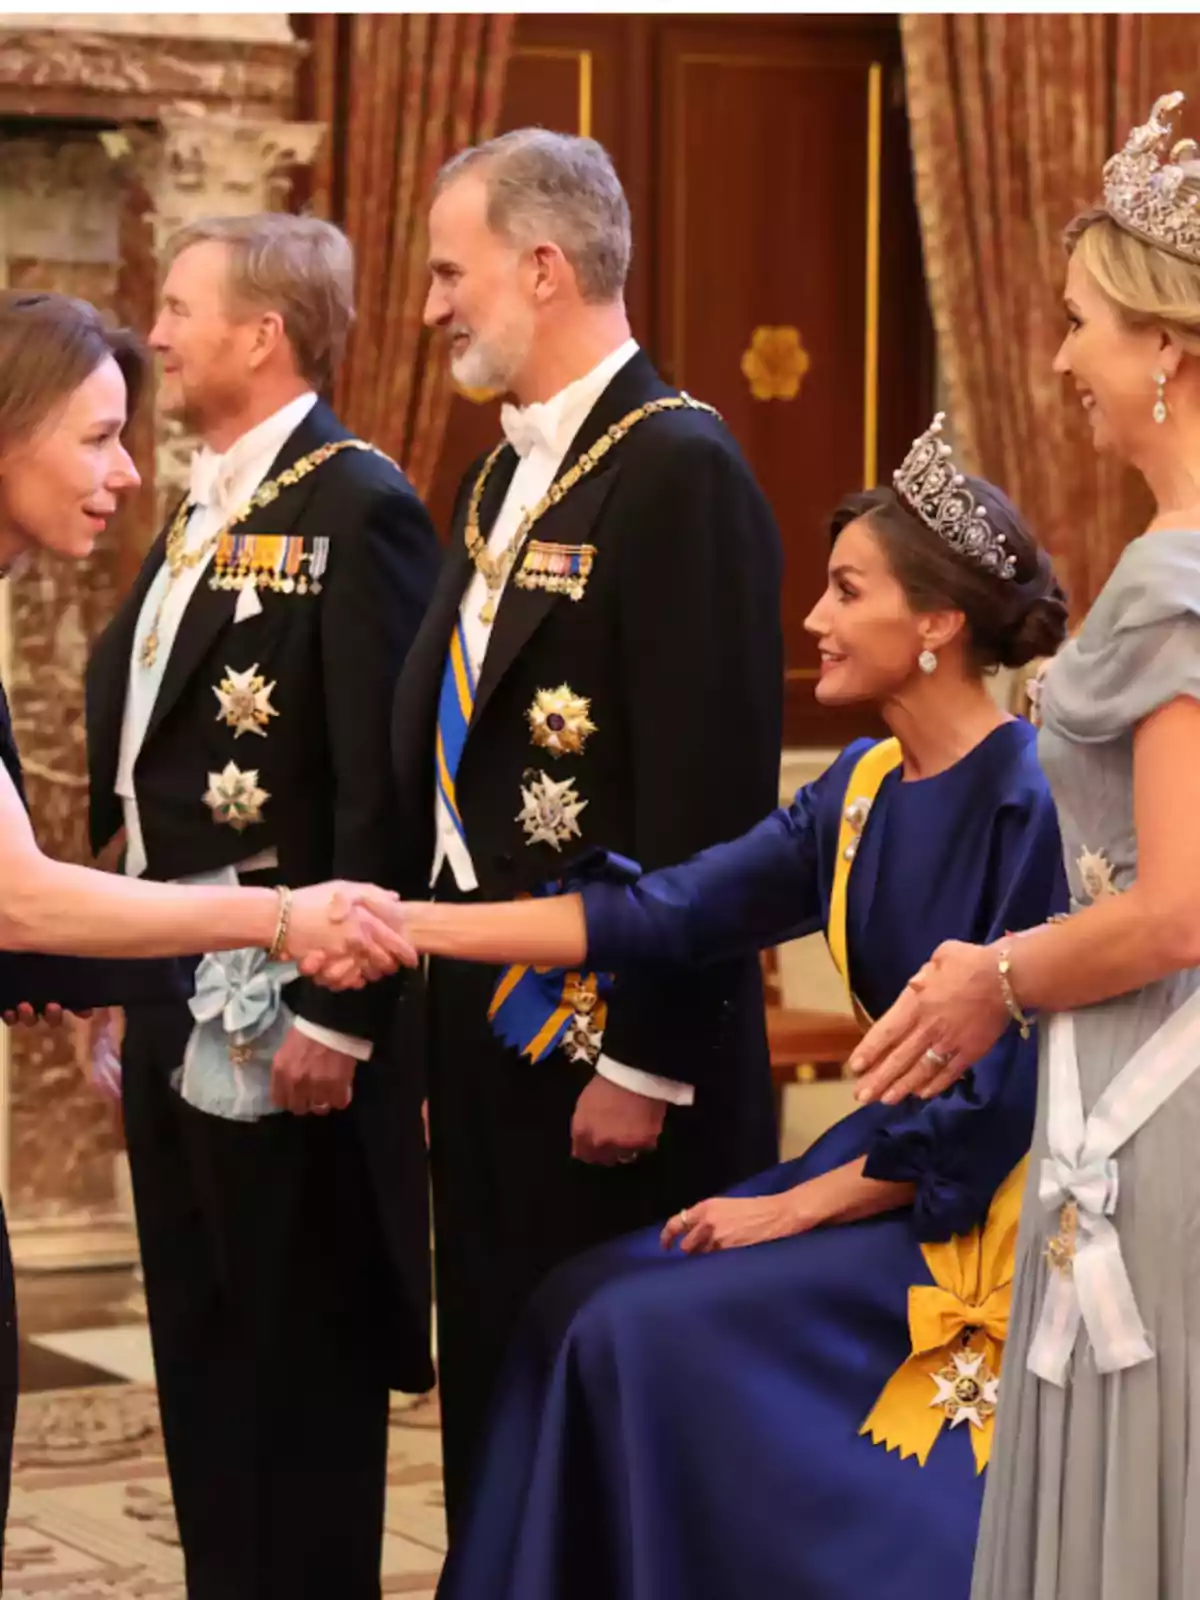 Personas vestidas de gala, algunas con tiaras y medallas, en un evento formal, una de ellas estrechando la mano de otra.